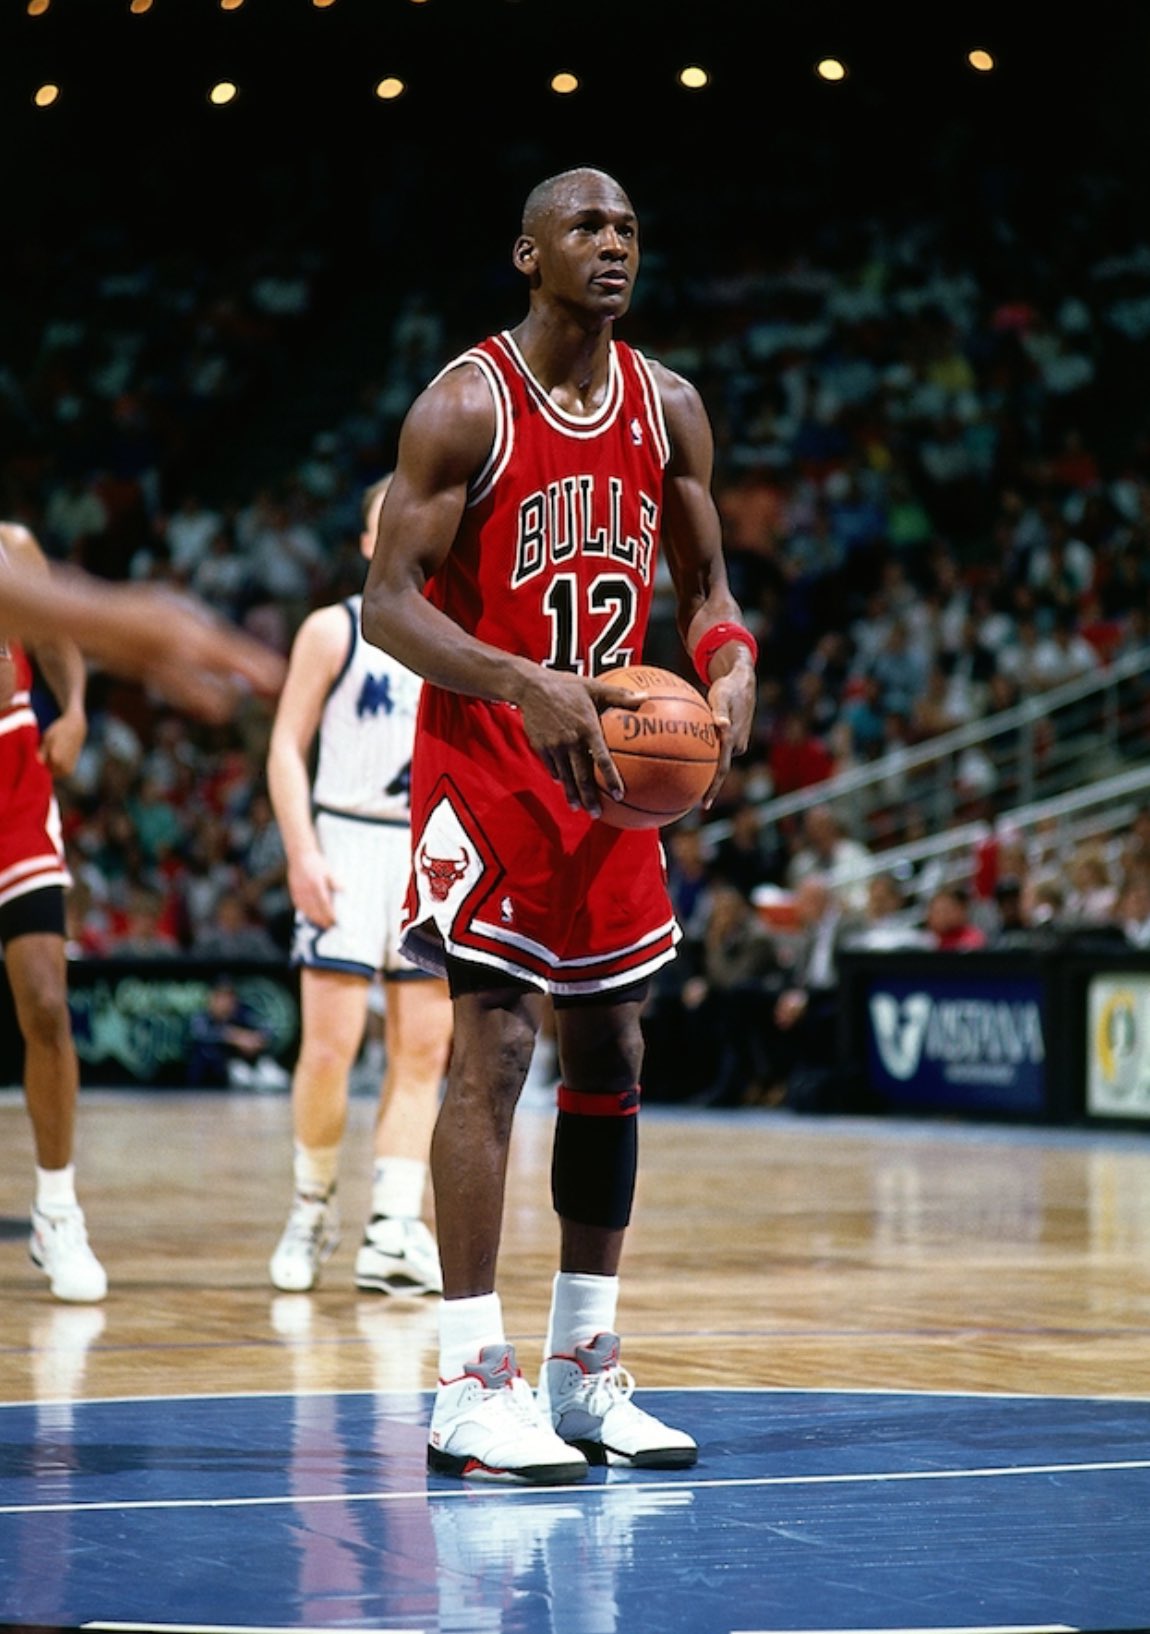 Michael Jordan Superfan Gets Full Back Tattoo Of MJ's Bulls Jersey